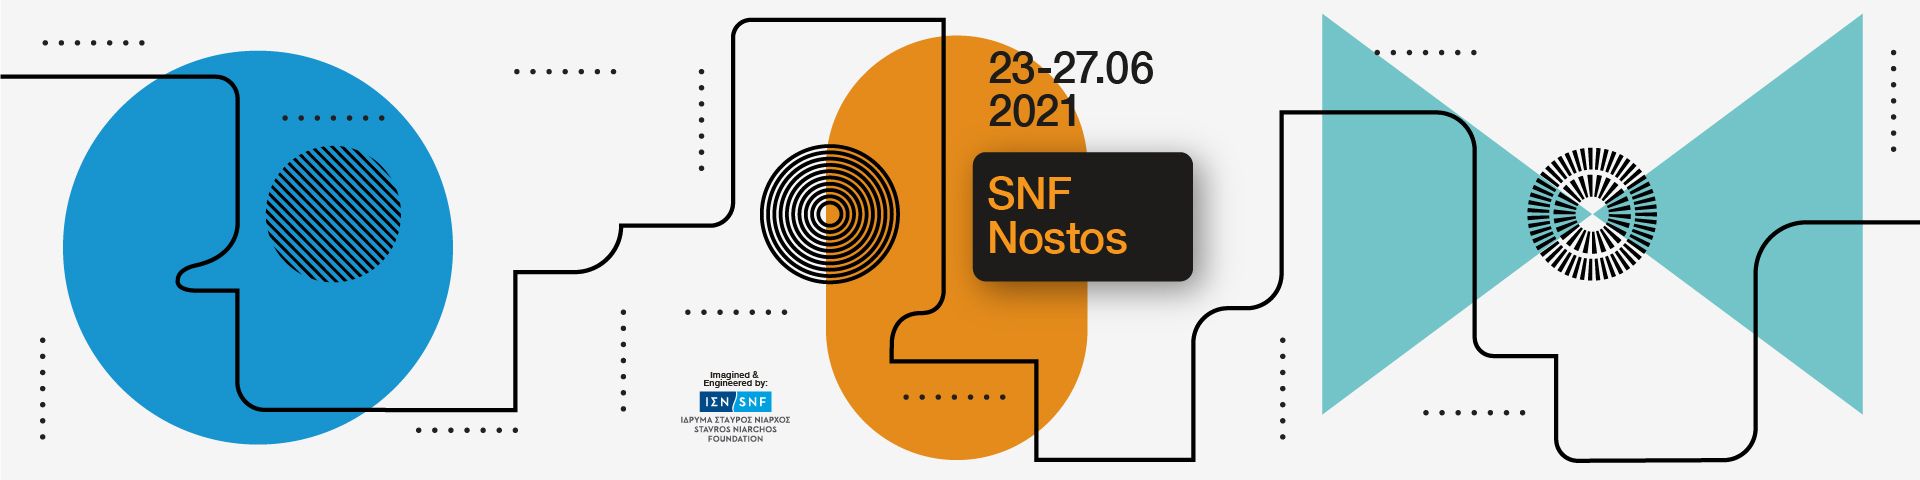 SNF Nostos web